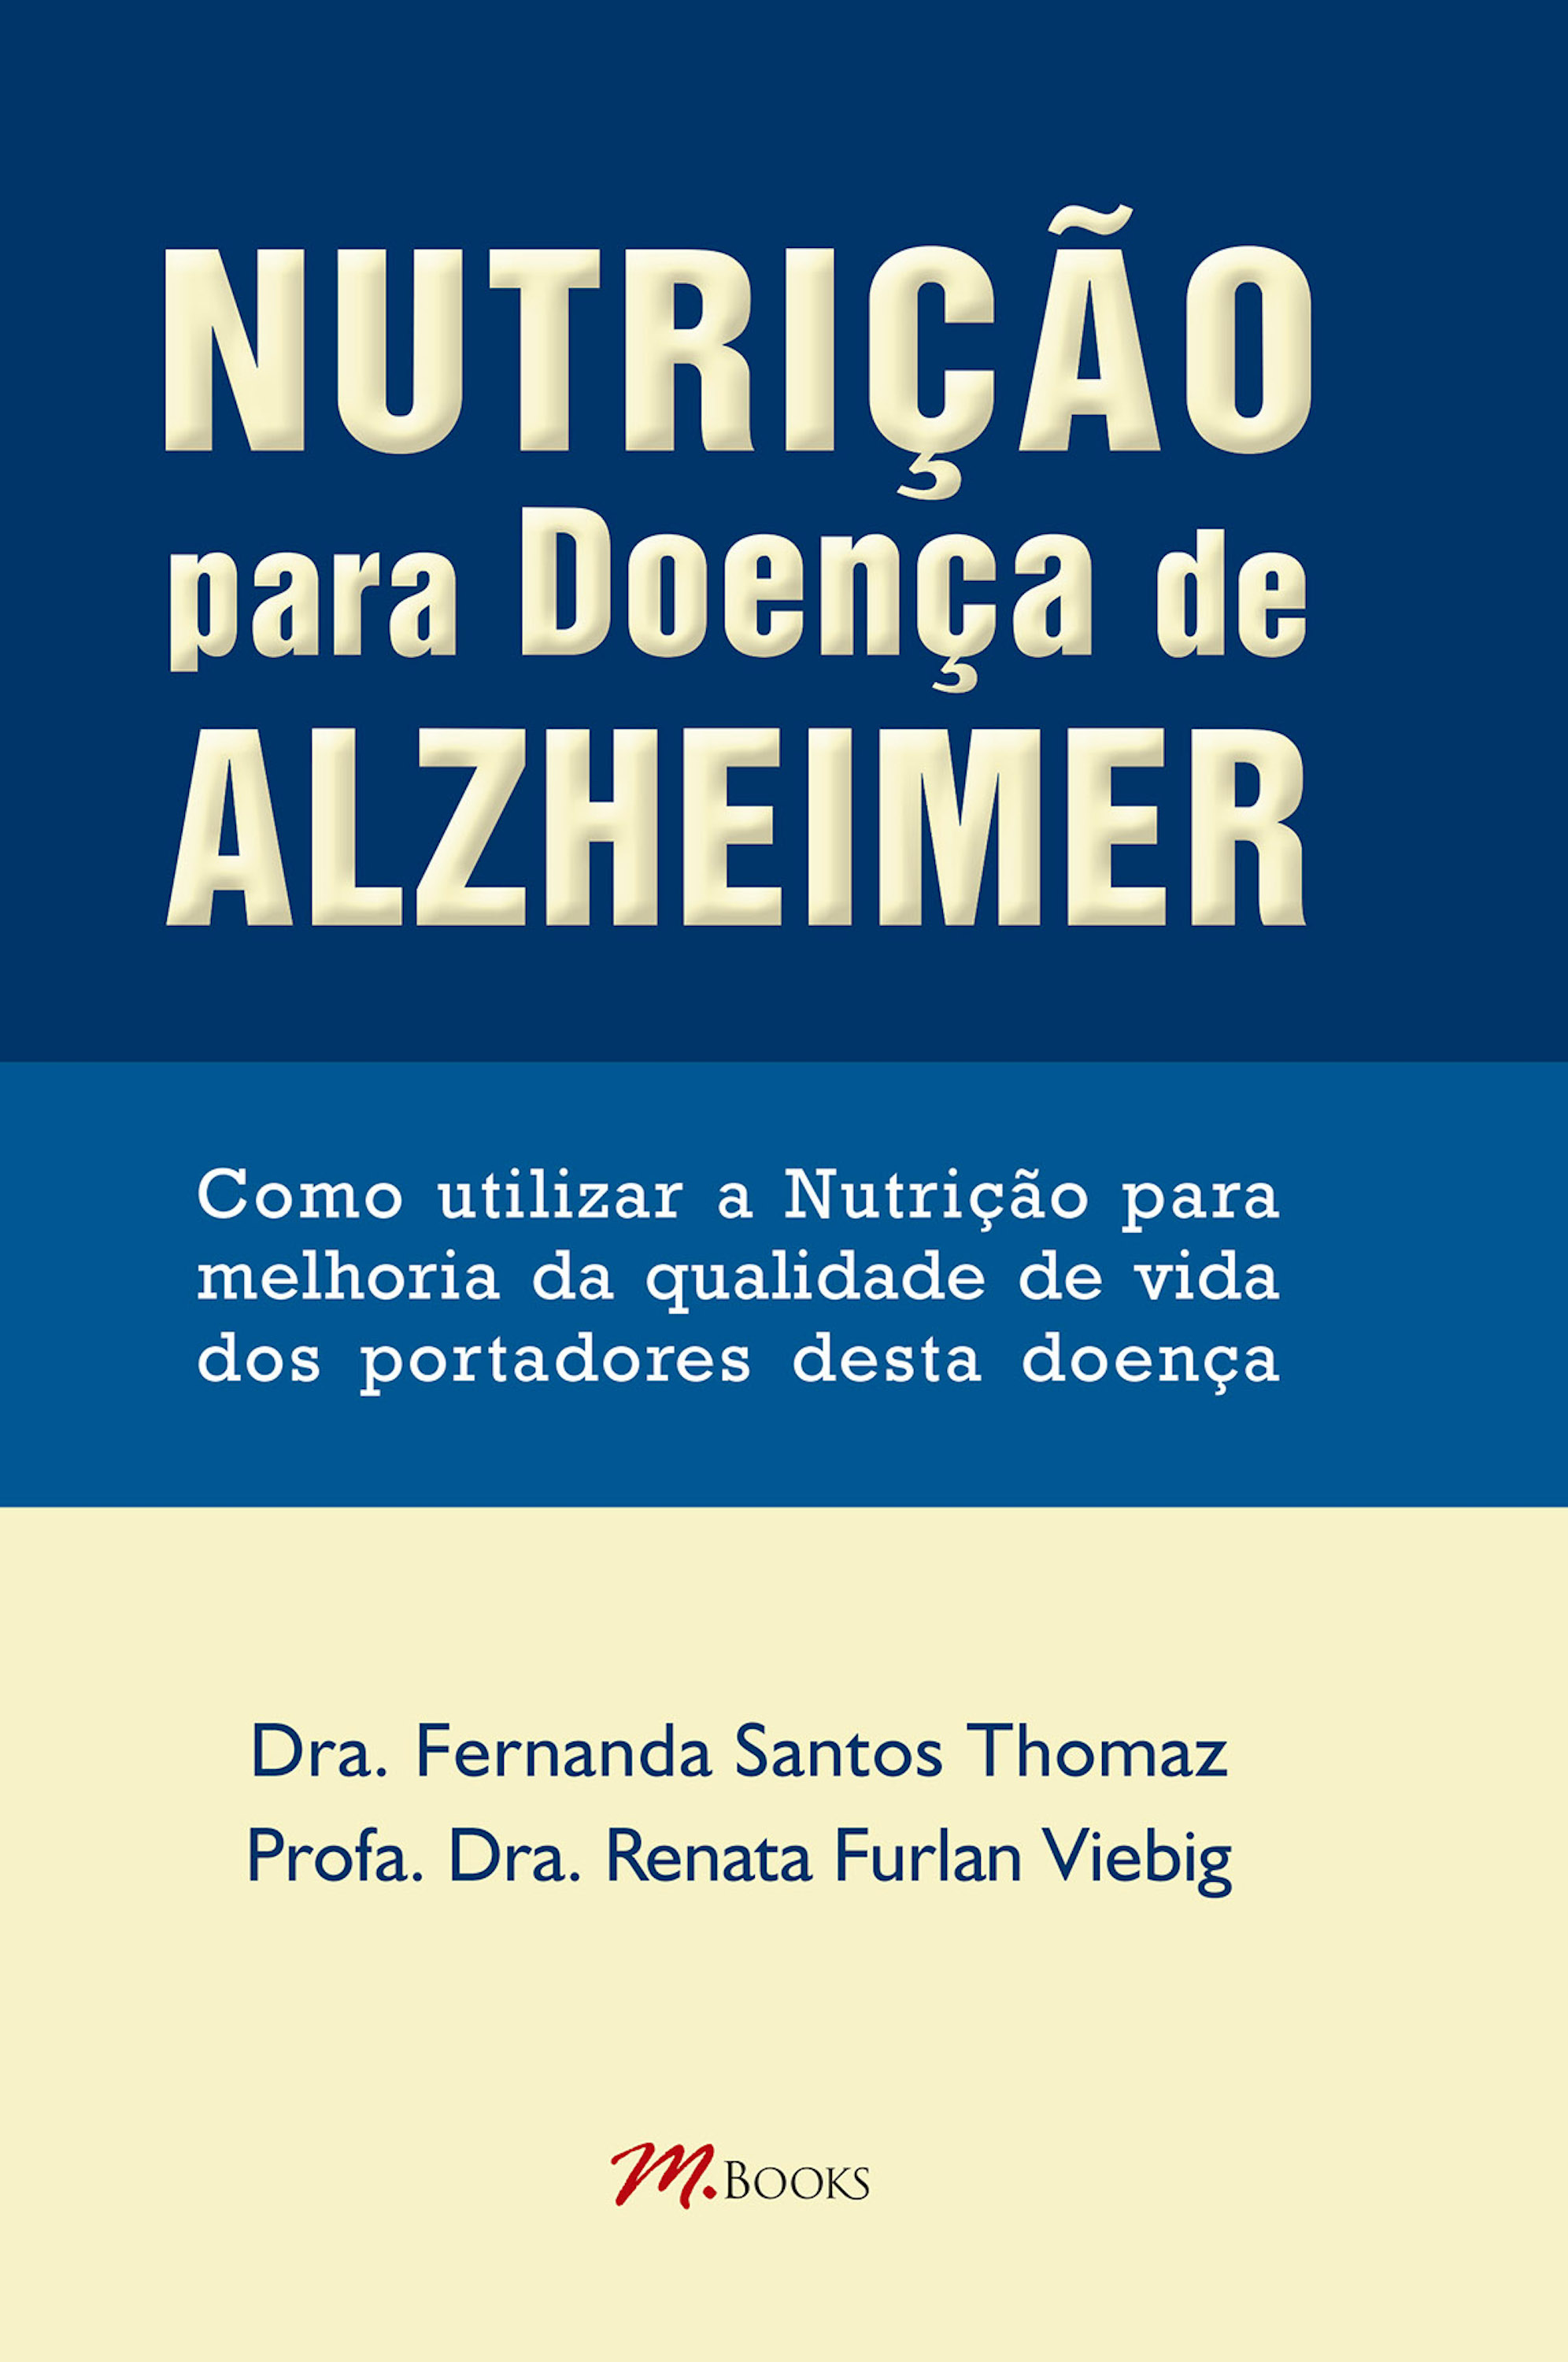 Nutrição para doença de Alzheimer